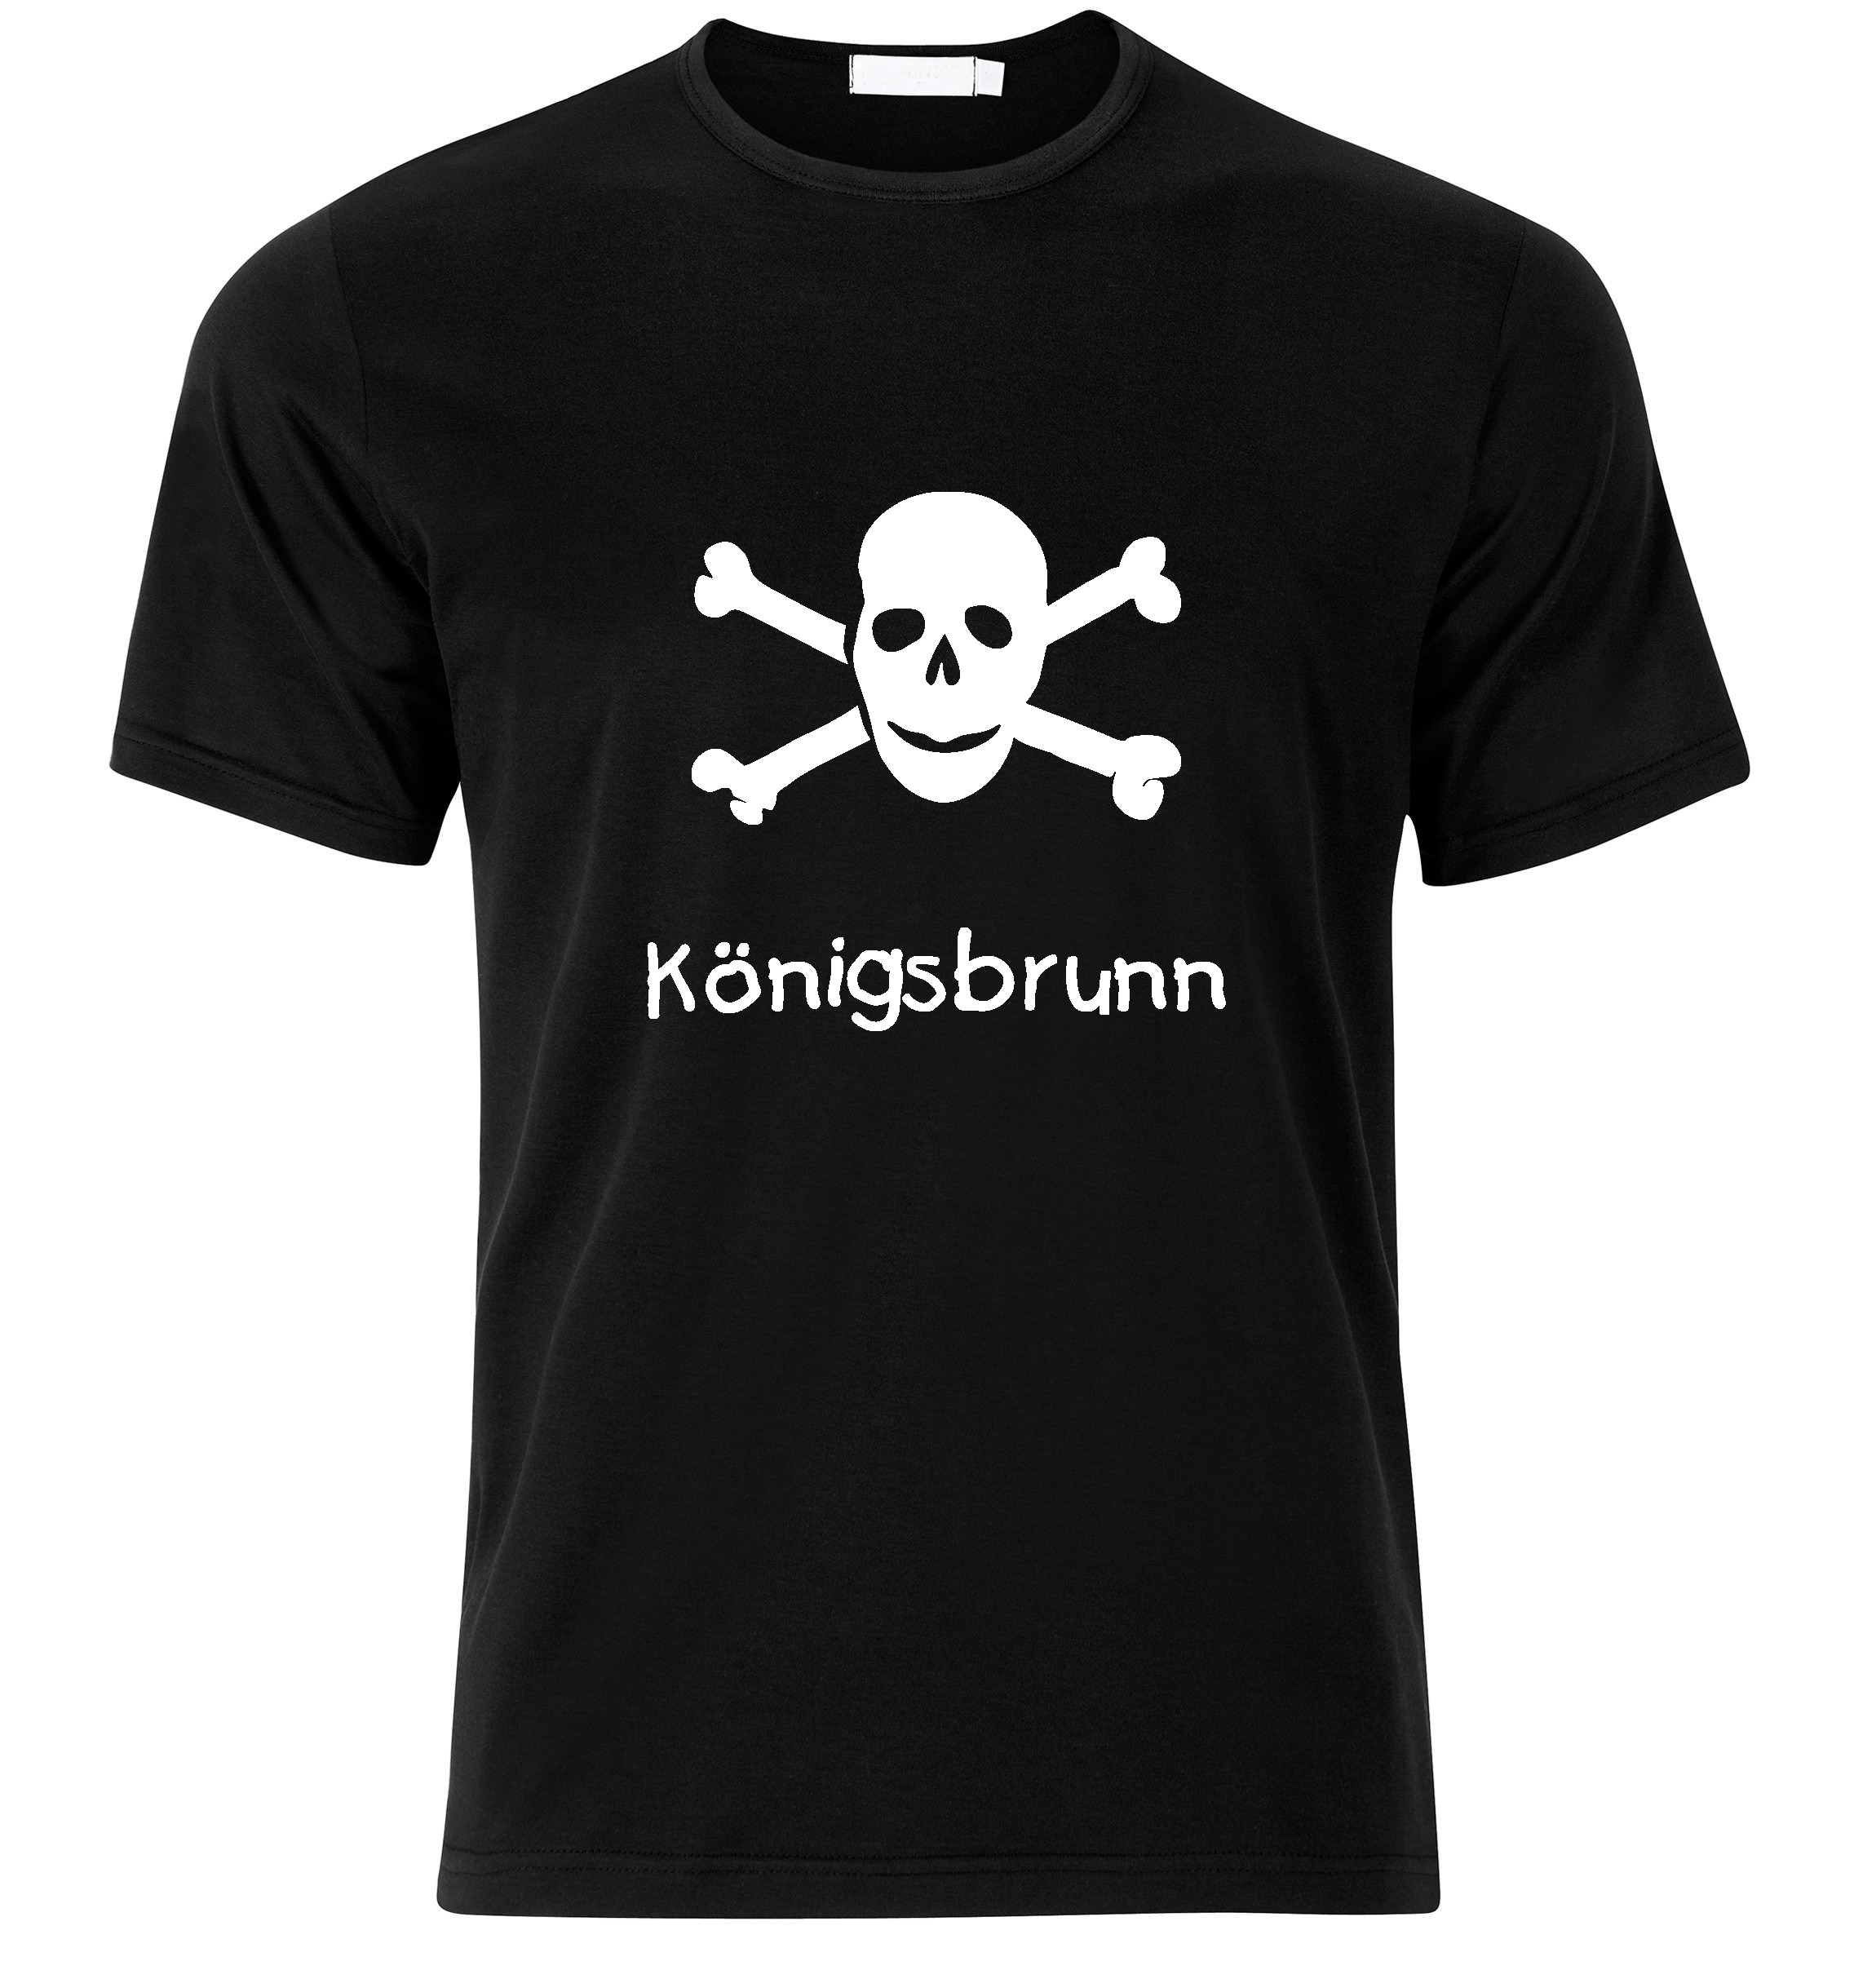 T-Shirt Königsbrunn Jolly Roger, Totenkopf